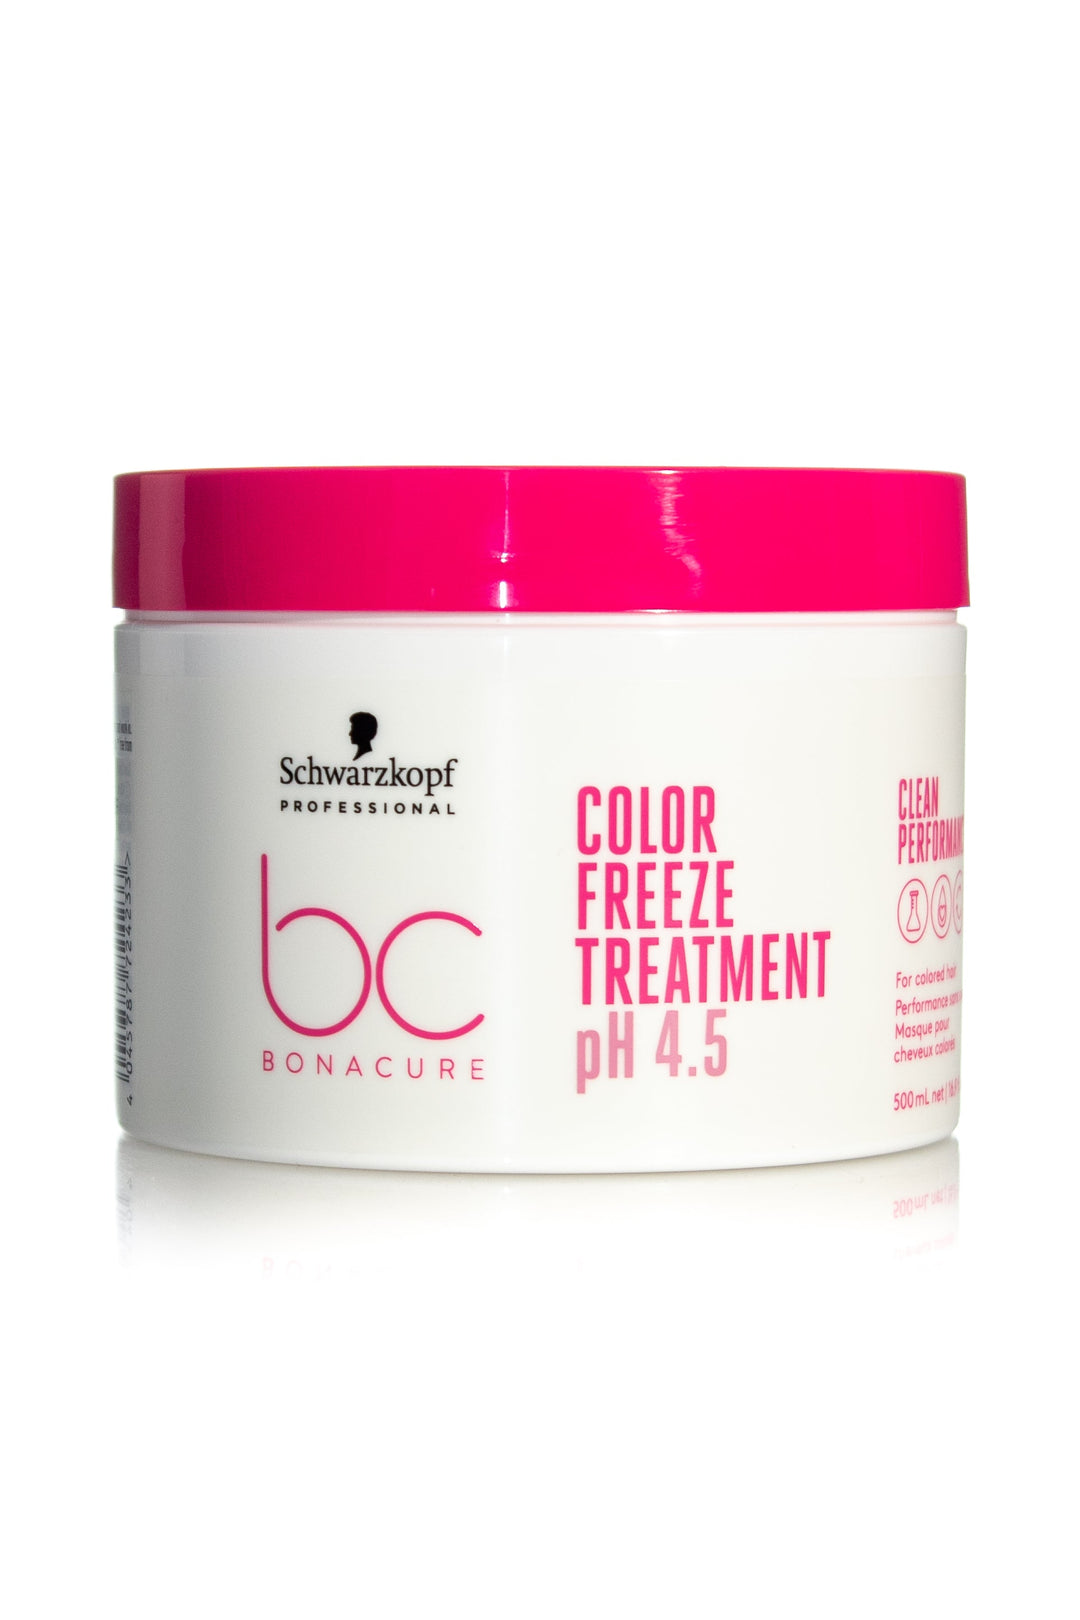 SCHWARZKOPF Bonacure Clean Performance Ph 4.5 Color Freeze Treatment | Various Sizes